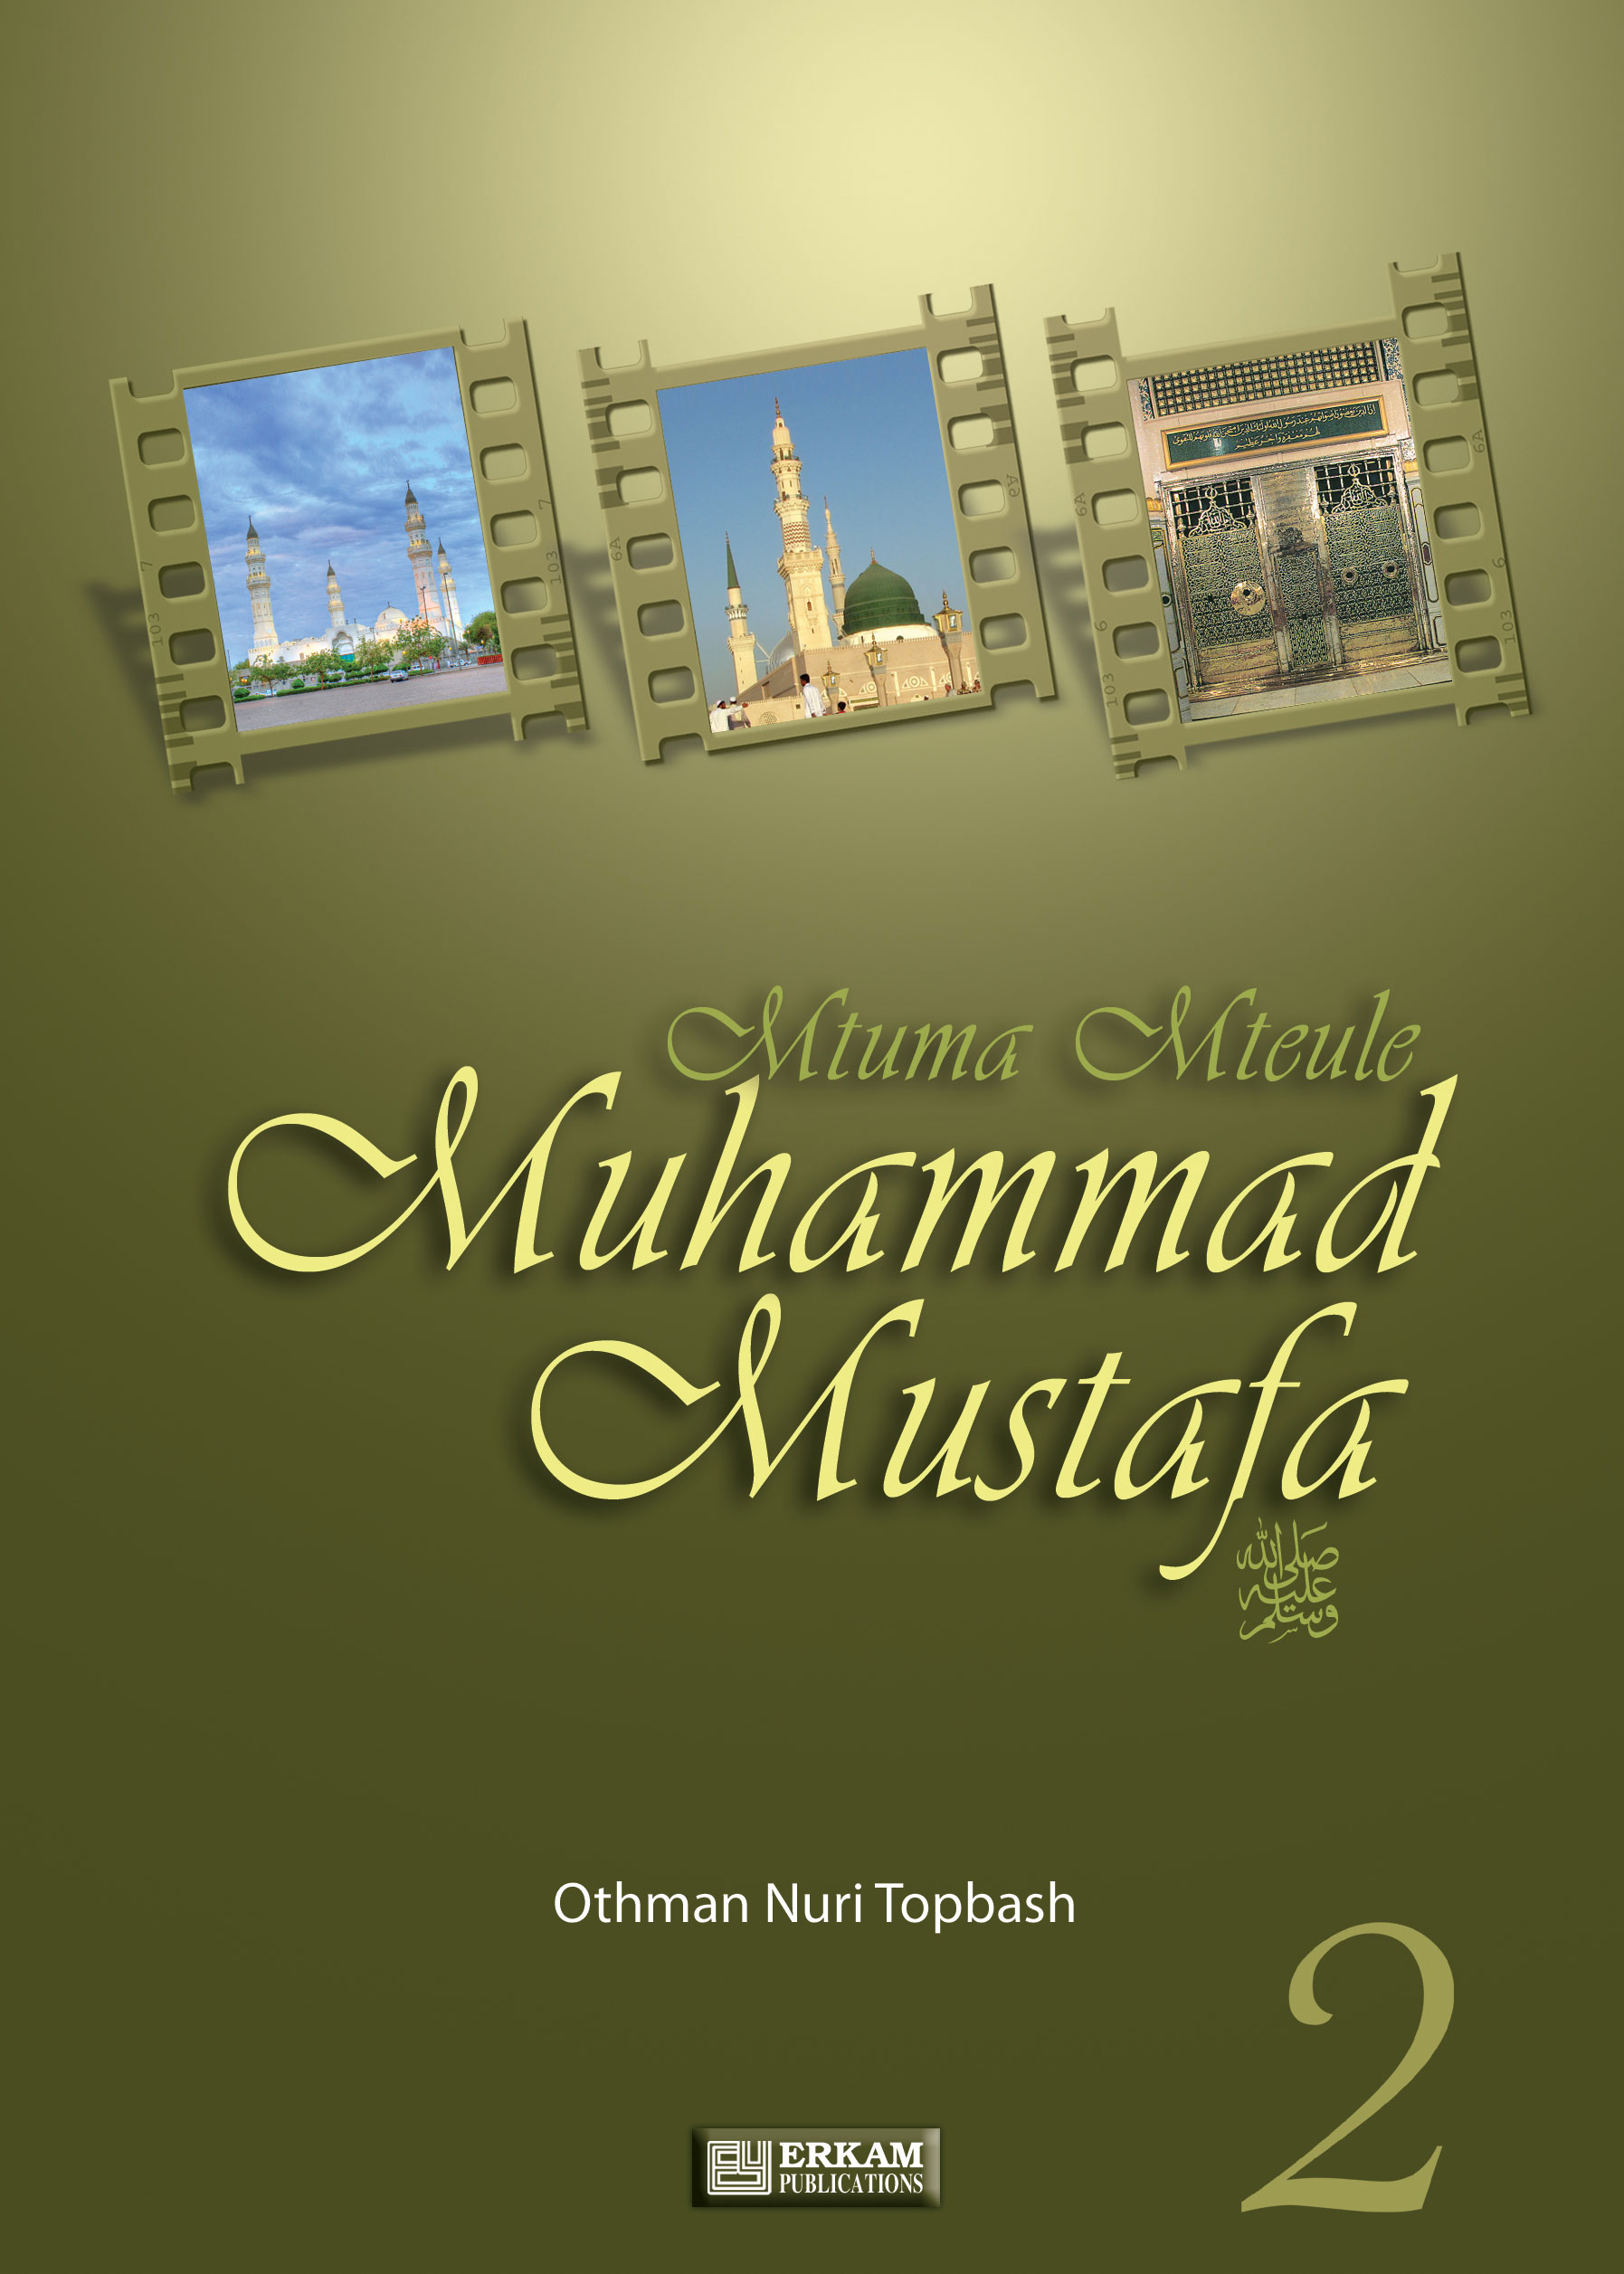 Mtume Mteule Muhammad Mustafa - 2